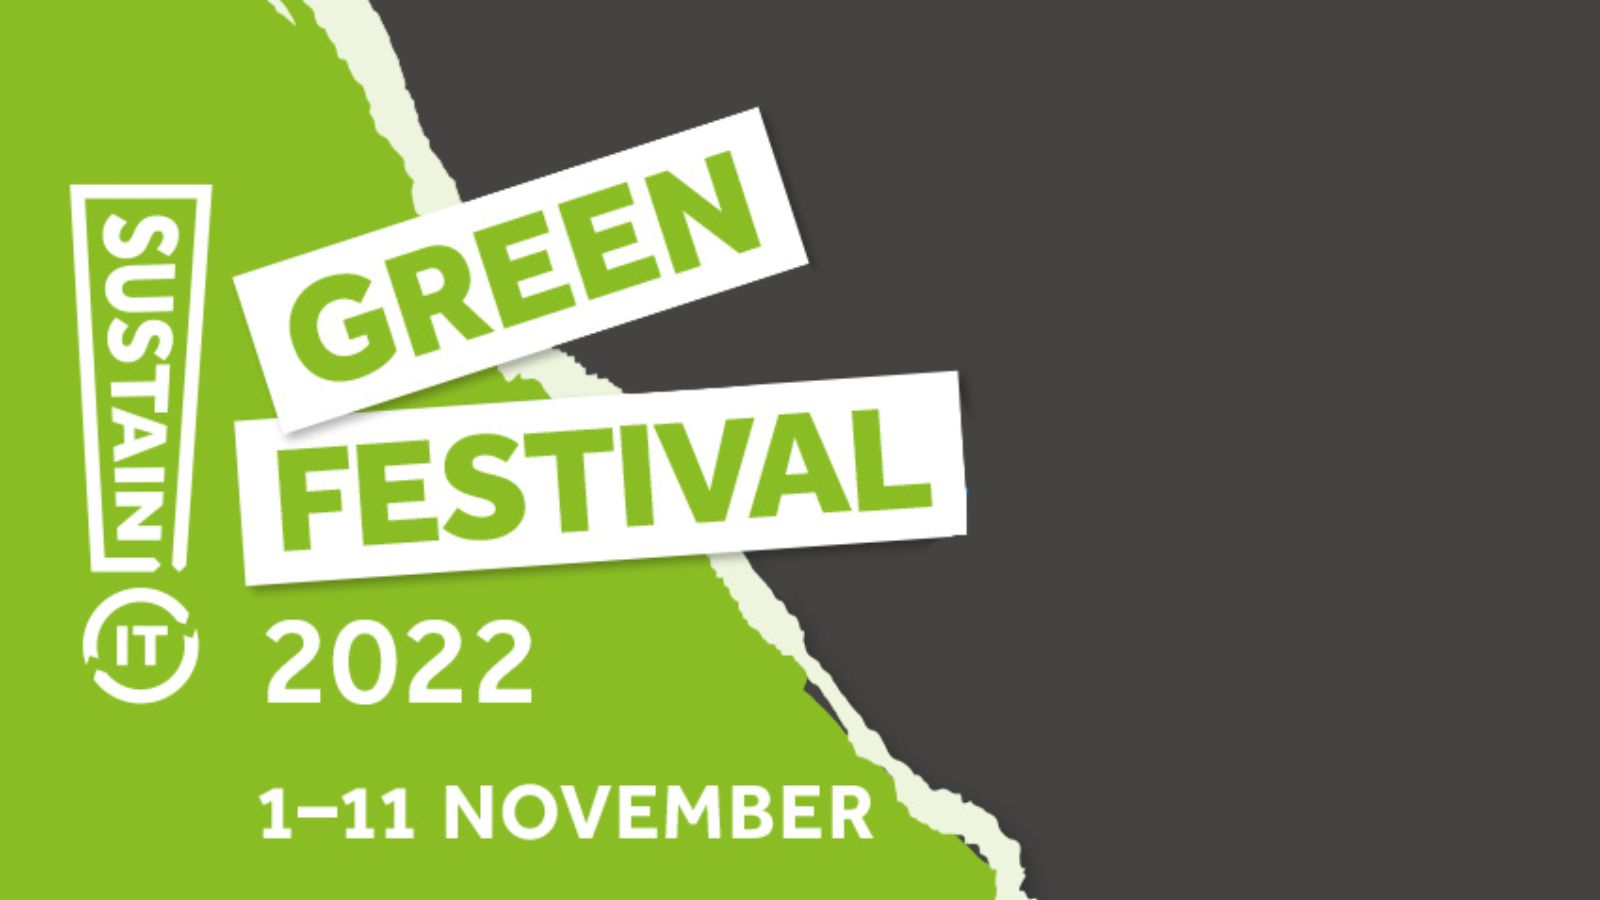 Green Festival 2022 1 - 11 November